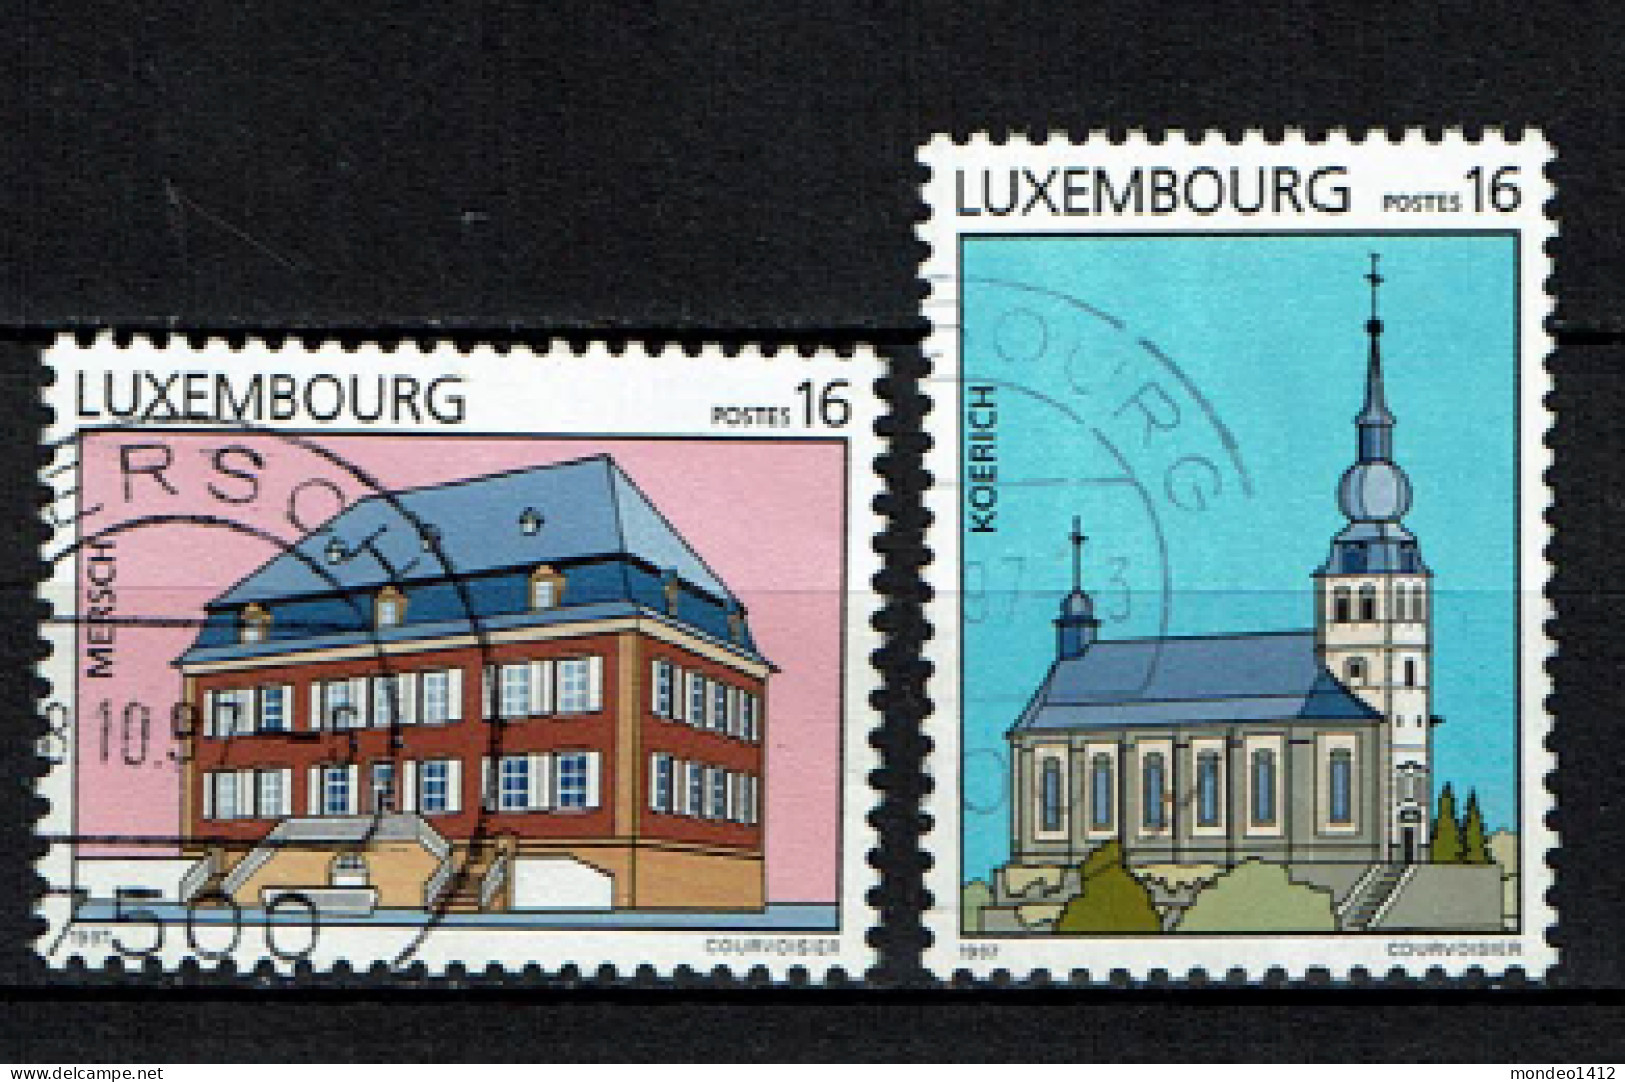 Luxembourg 1997 - YT 1363/1364 - Tourism, Mersch, Koerich - Oblitérés